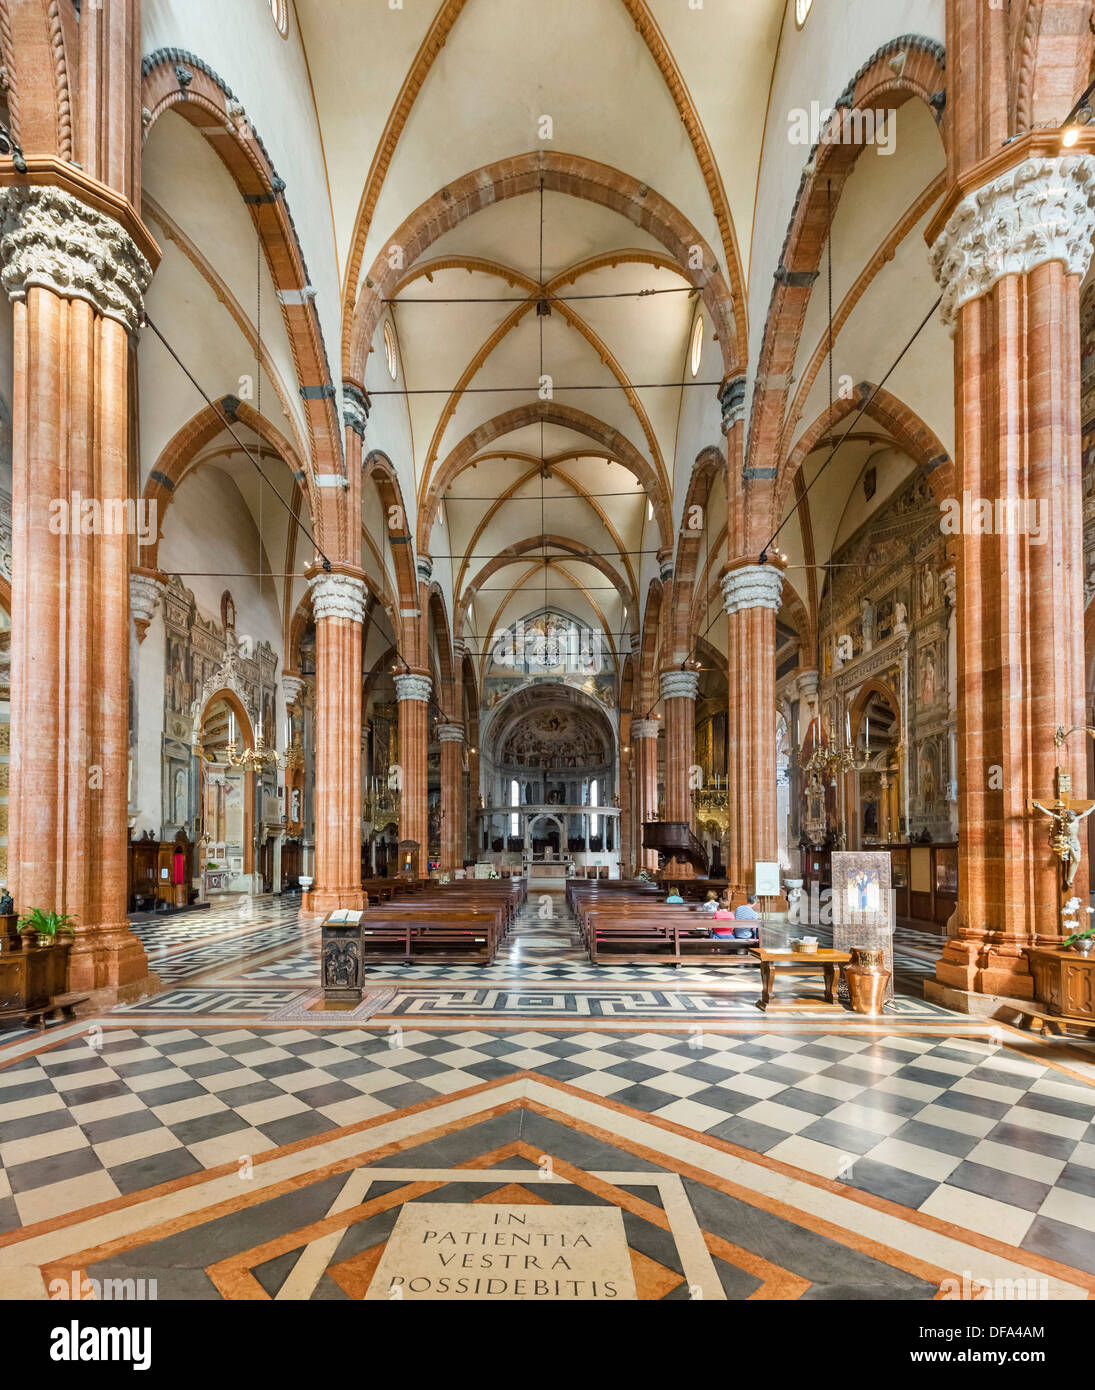 Interno del Duomo di Verona (Cattedrale di Santa Maria Matricolare), Verona, Veneto, Italia Foto Stock